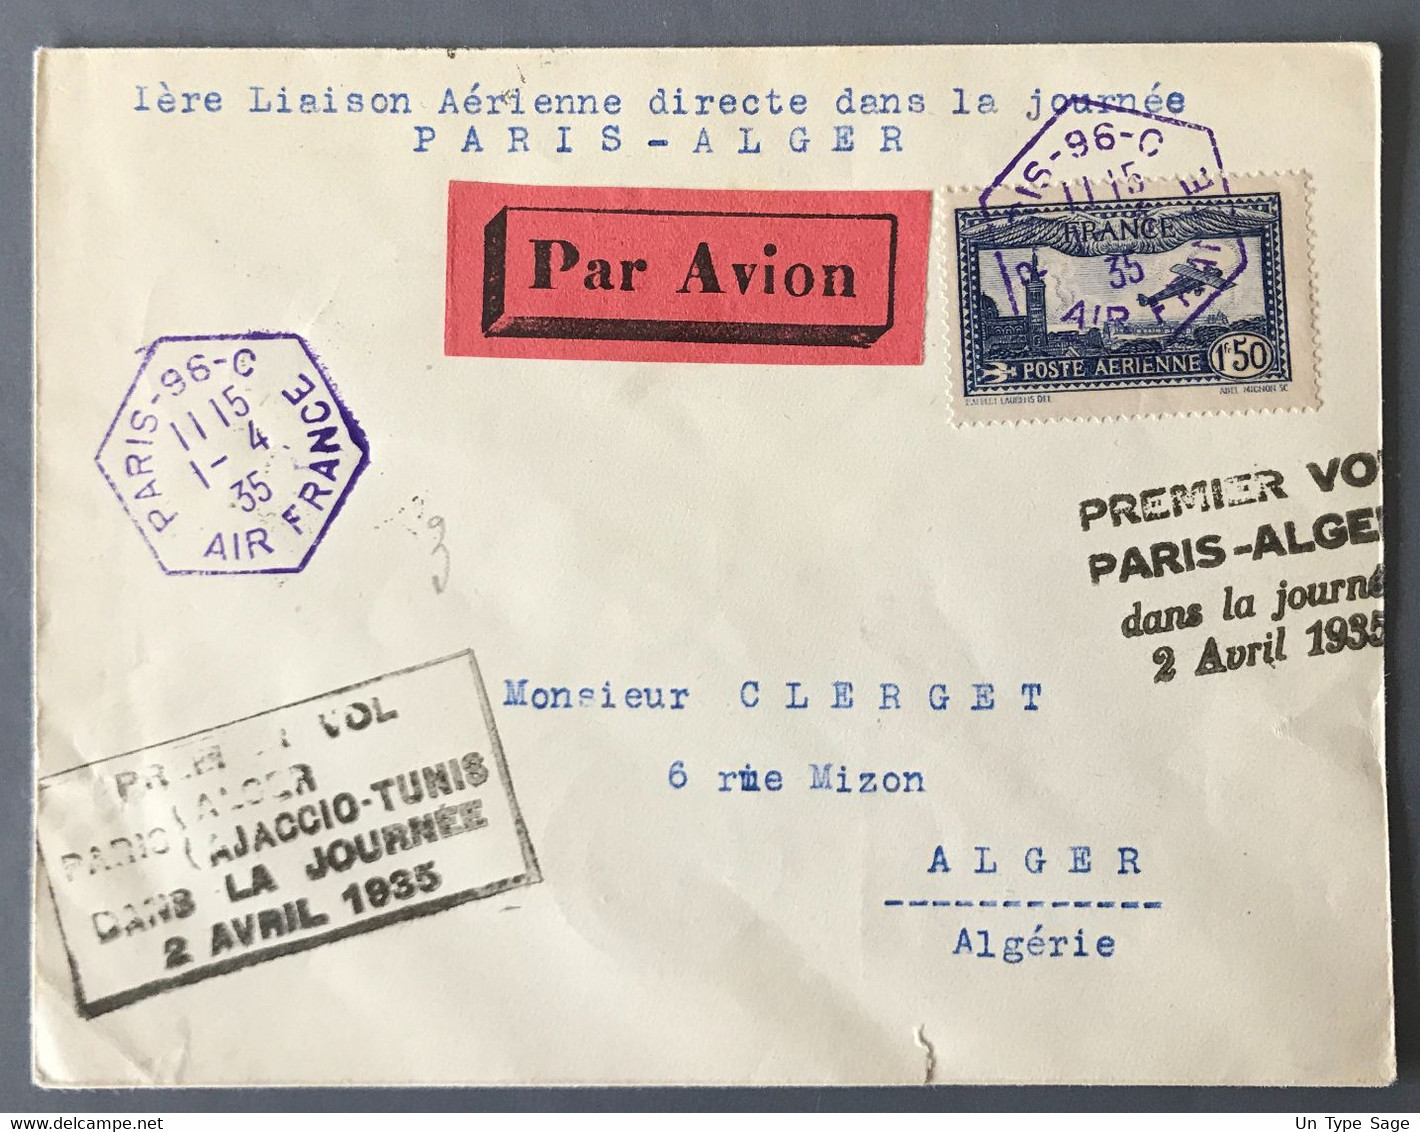 France PA N°6 Sur Enveloppe De Paris 1.4.1935 - Premier Vol Paris-Alger Dans La Journée 2 Avril 1935 - (W1115) - 1960-.... Covers & Documents